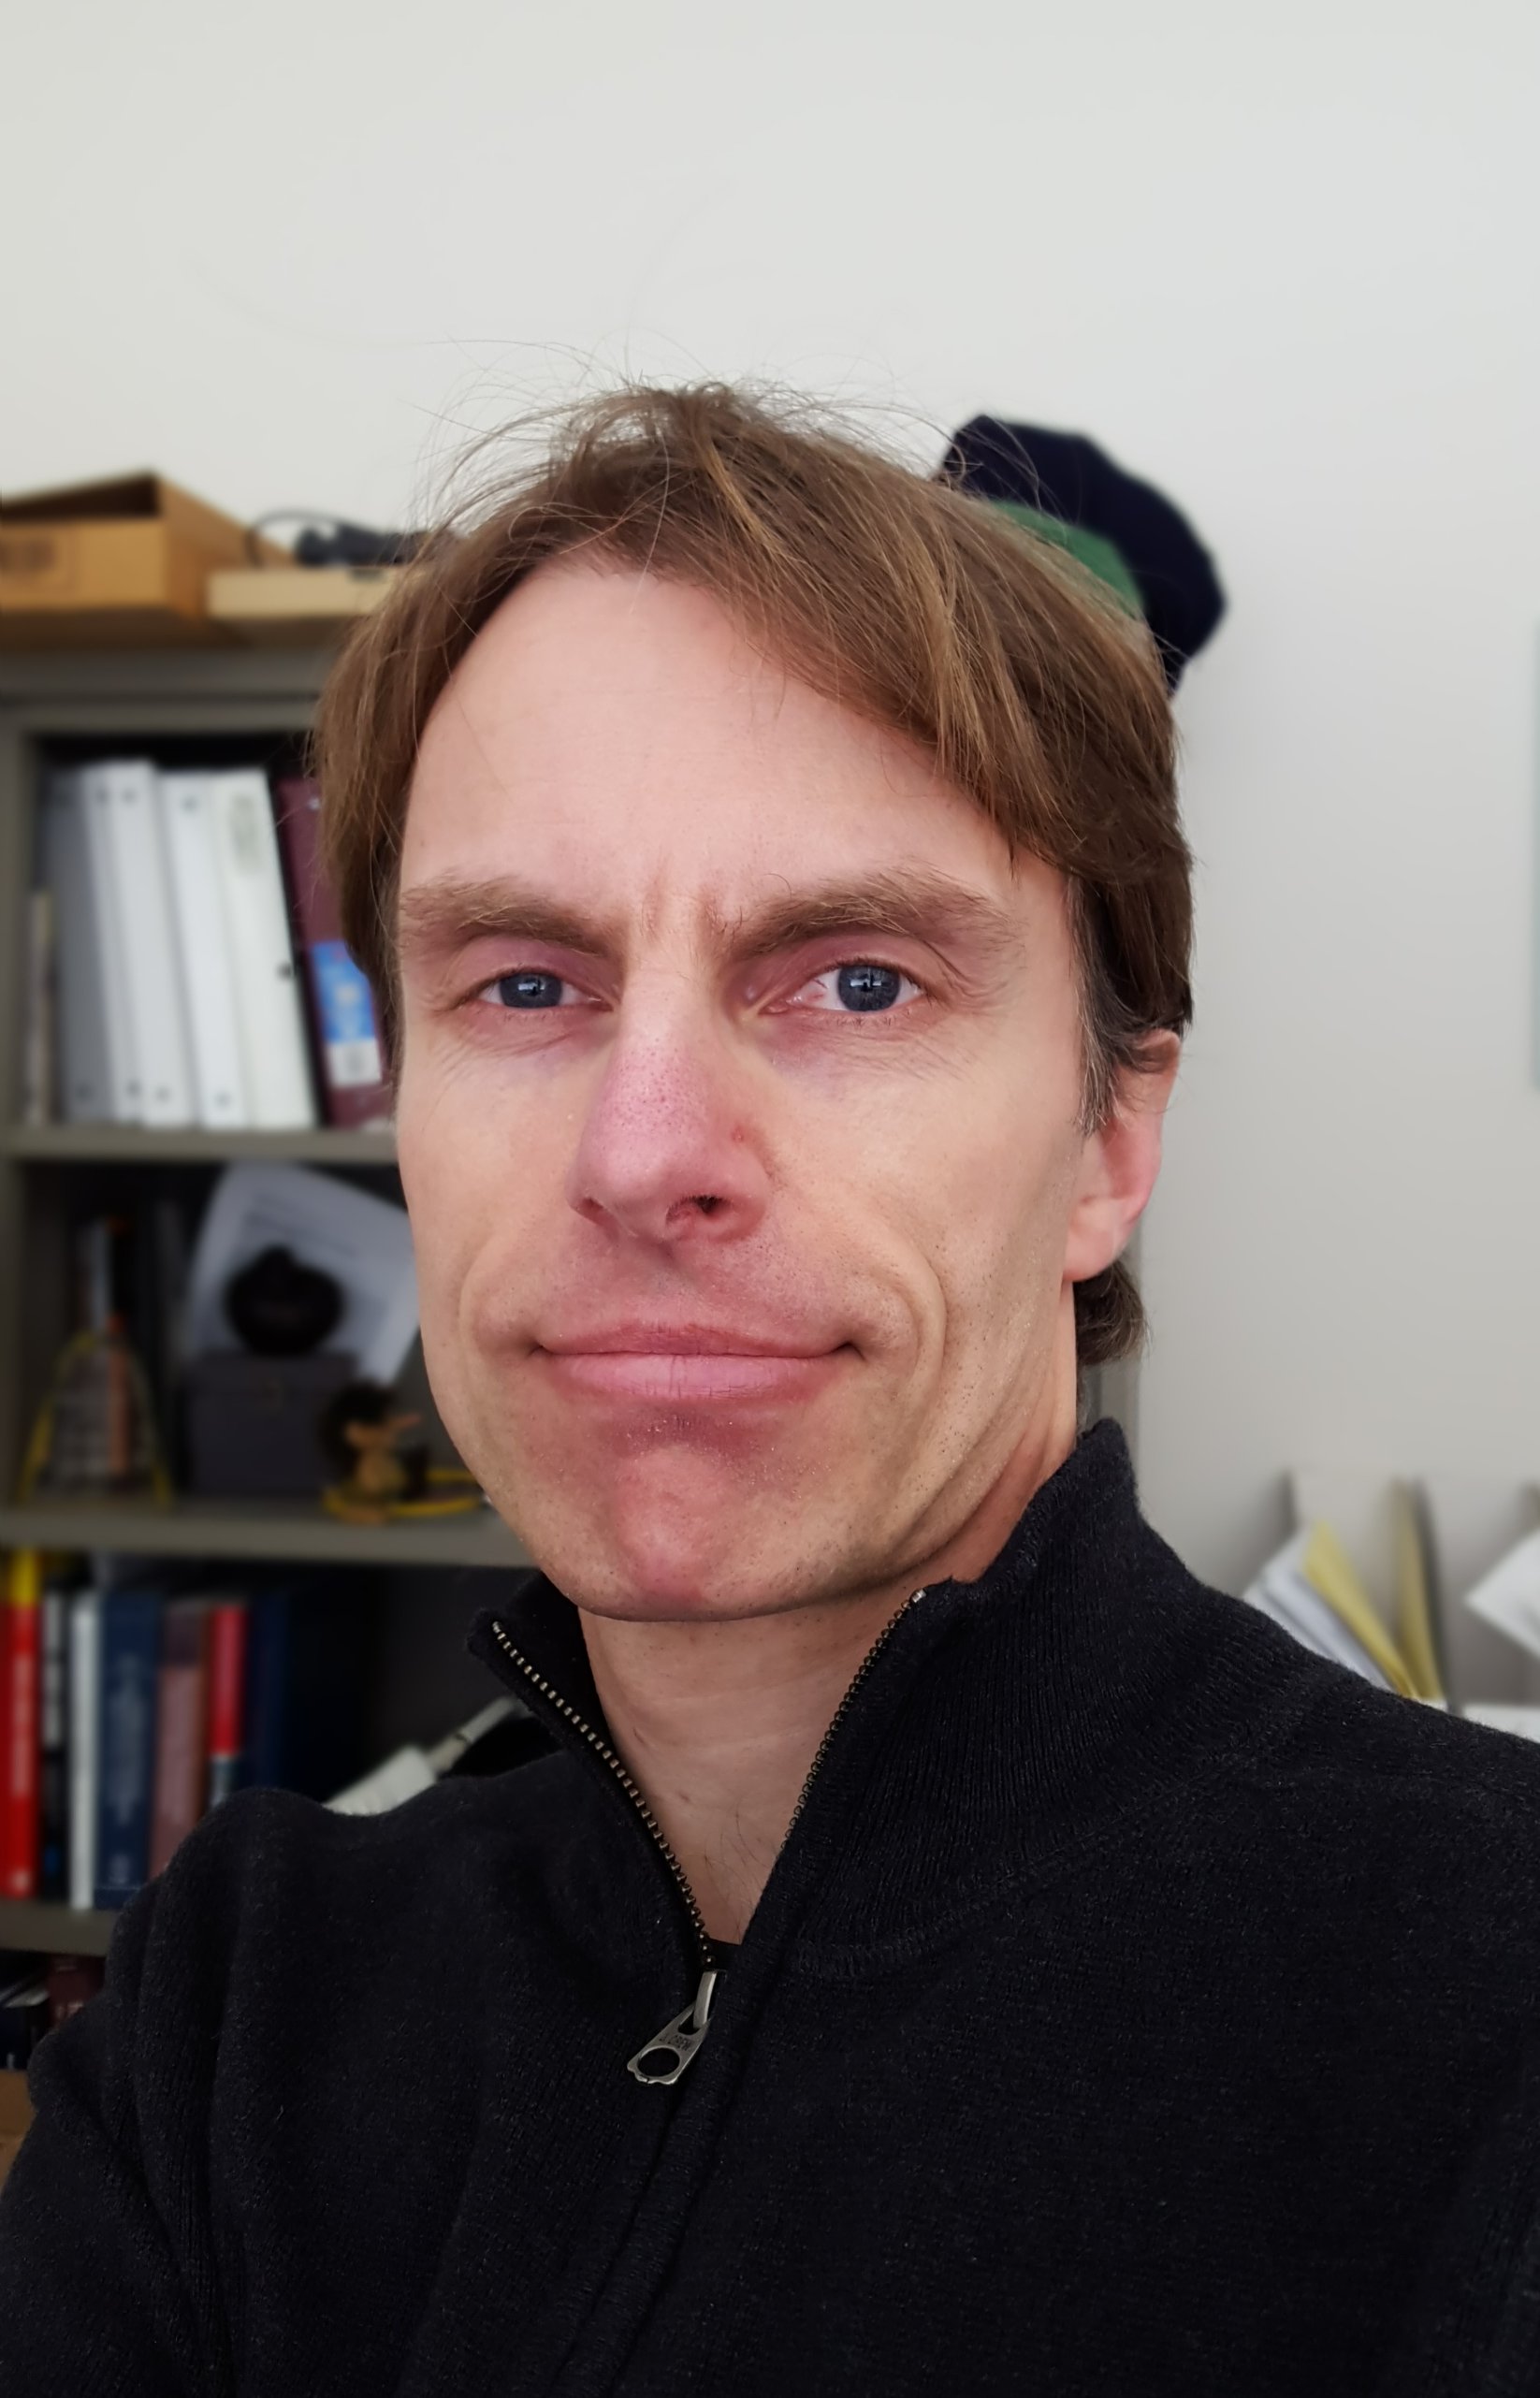 Jon-Fredrik Nielsen, PhD